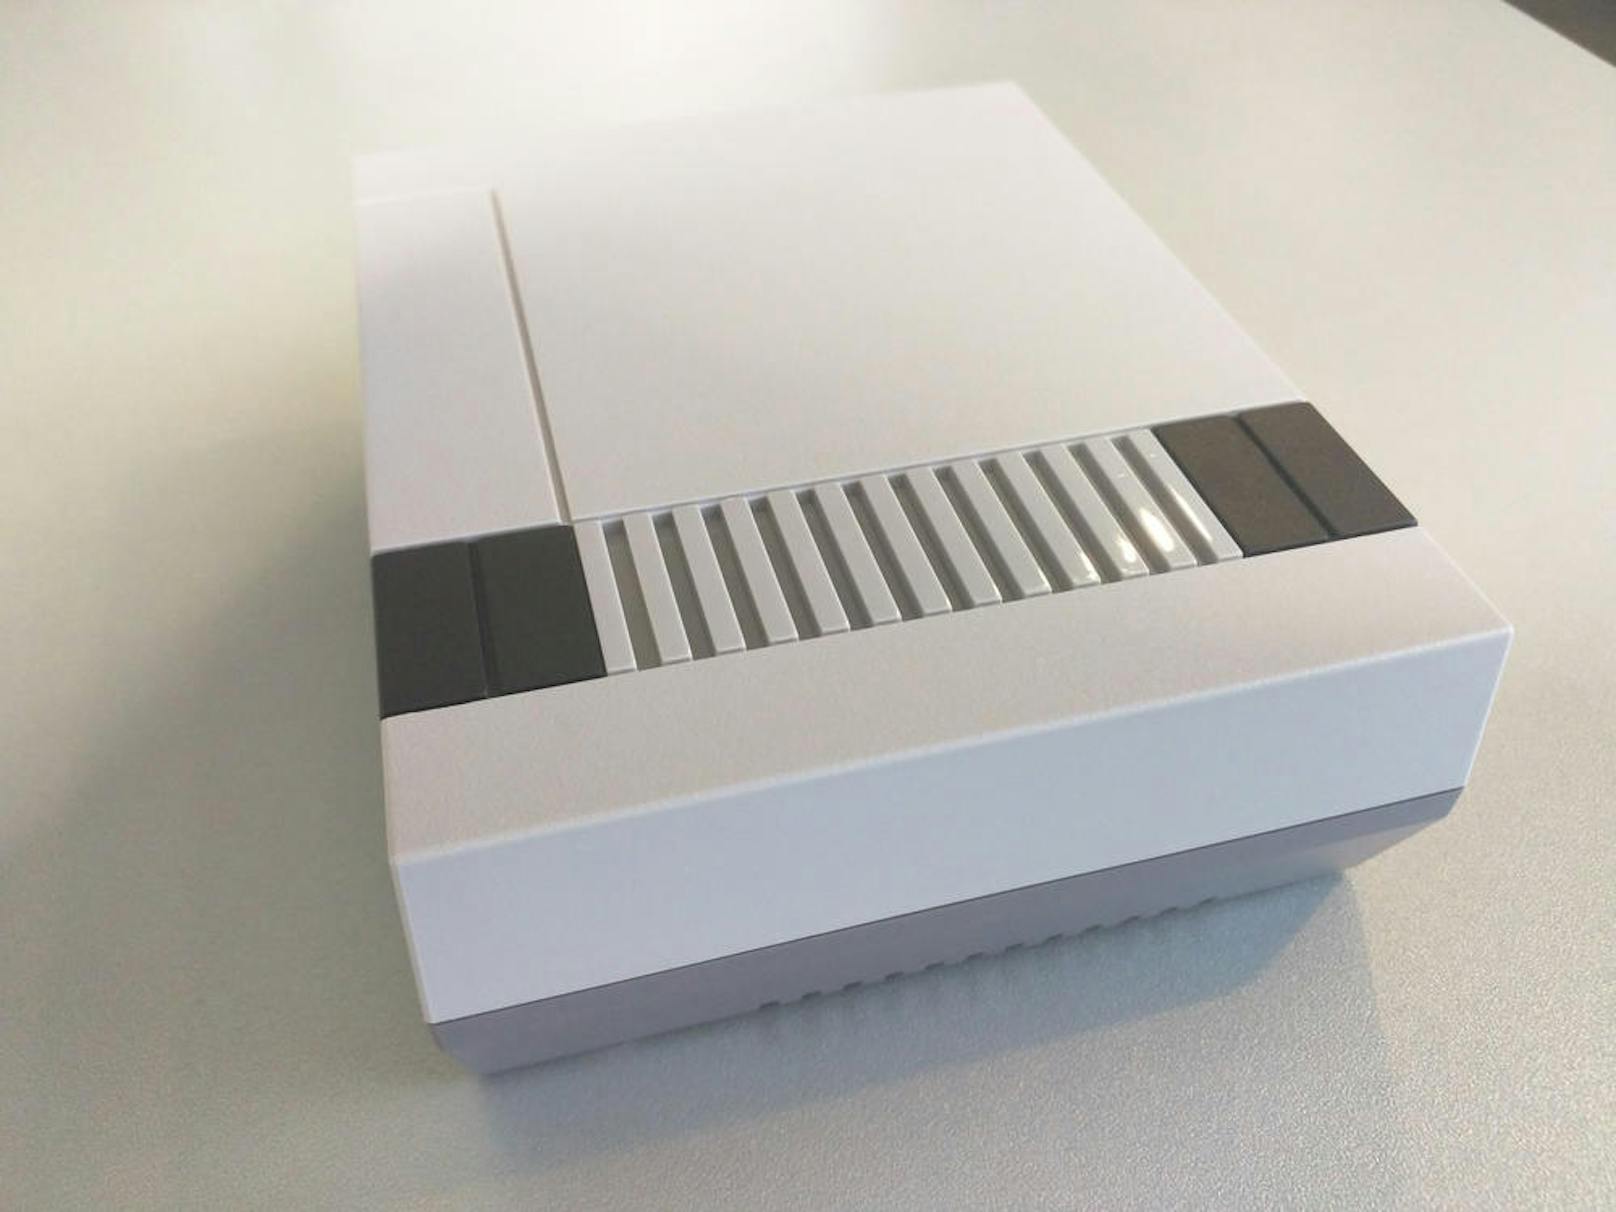 Die Spielsteuerung erfolgt über den Nintendo Classic Mini: NES-Controller, der im Lieferumfang der Konsole enthalten ist und dem originalen Controller von damals exakt nachempfunden wurde.